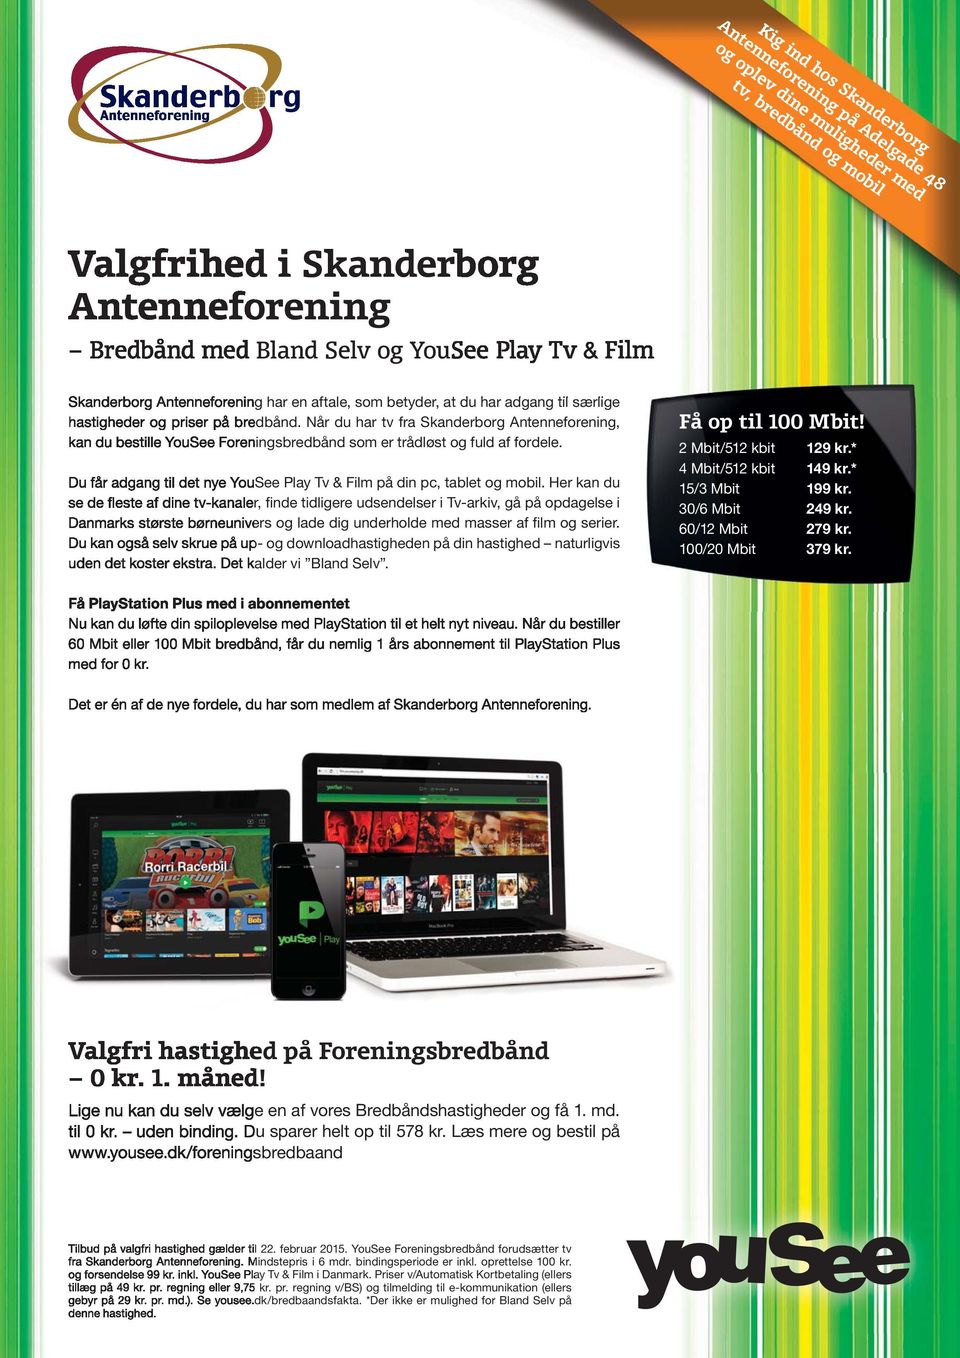 Når du har tv fra Skanderborg Antenneforening, kan du bestille YouSee Foreningsbredbånd som er trådløst og fuld af fordele. Du får adgang til det nye YouSee Play Tv & Film på din pc, tablet og mobil.